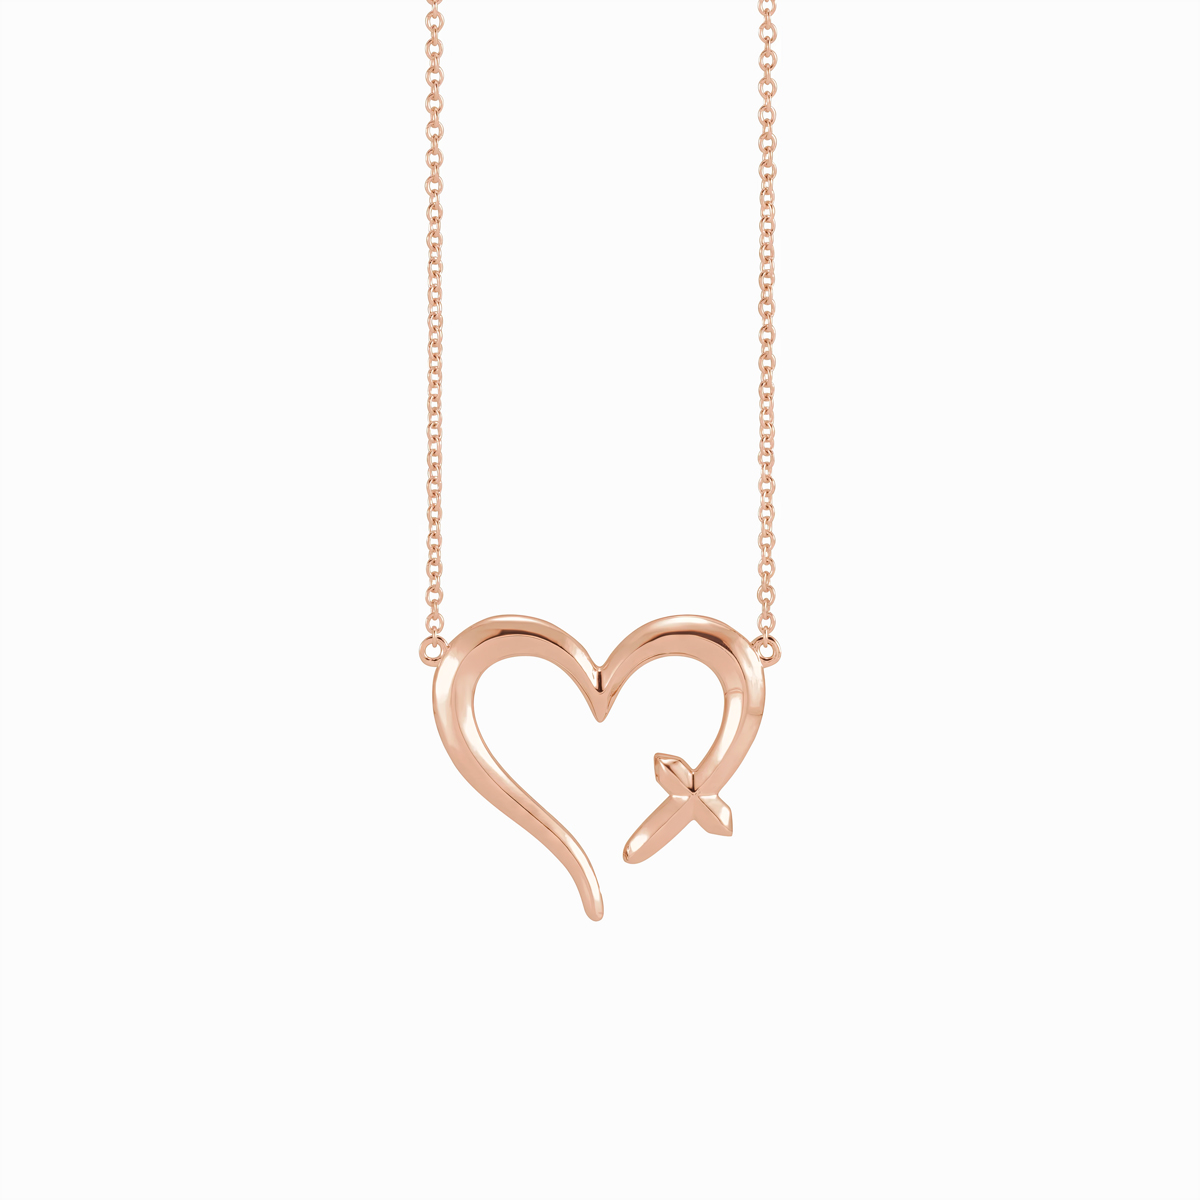 Lillian Multicolored Crystal Heart Cross Necklace - Anne Koplik Designs